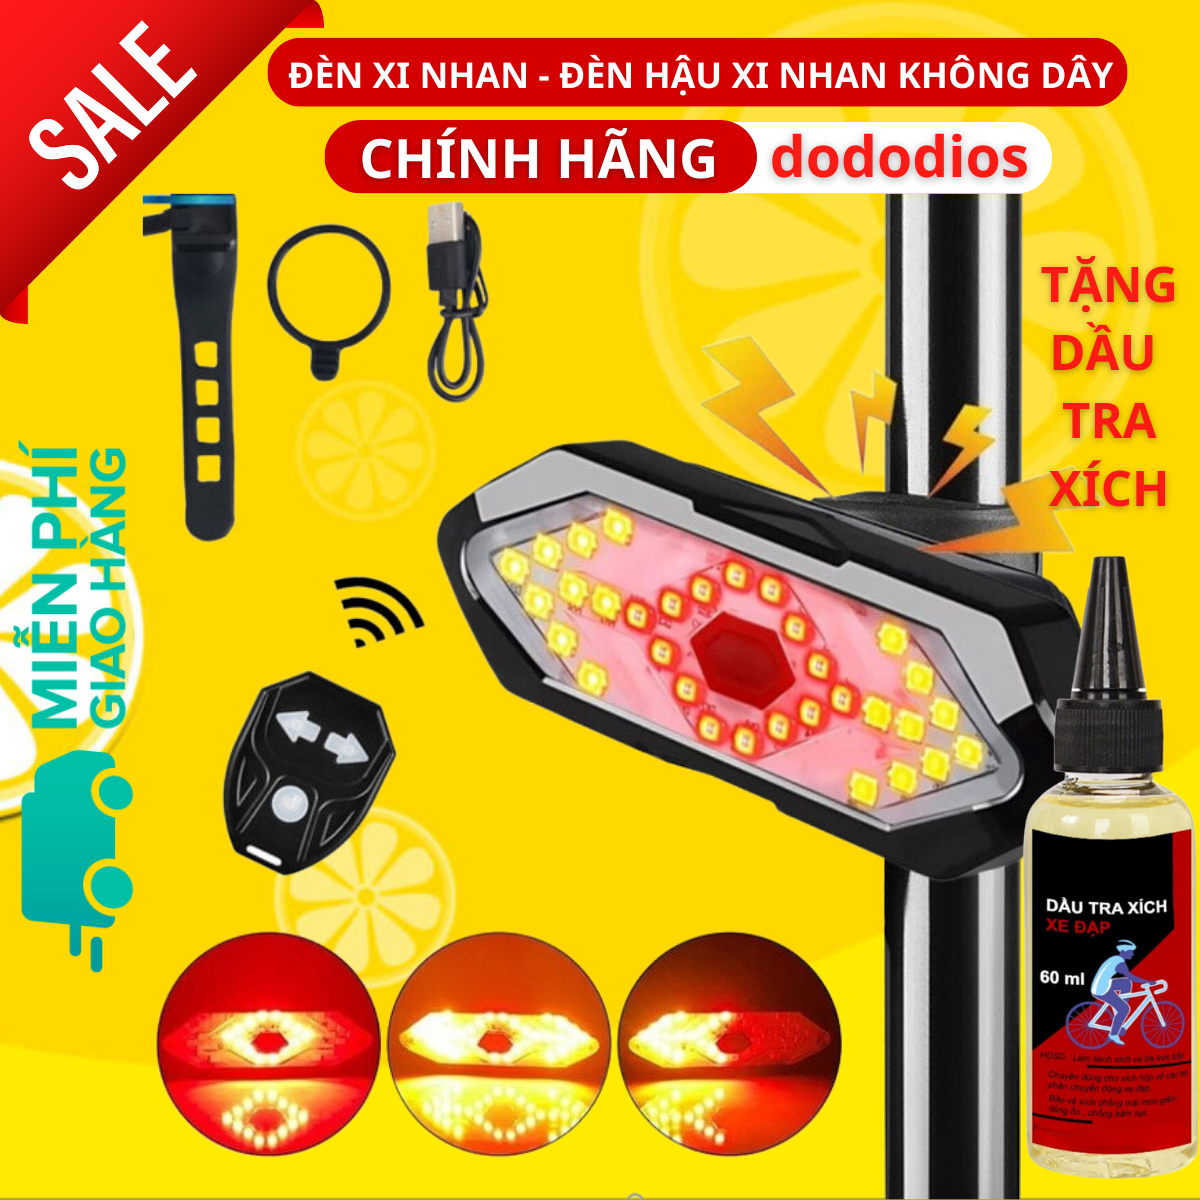 [TẶNG Dầu Tra Xích] Đèn xe đạp thể thao dododios siêu sáng có còi pin sạc usb led T6 chống nước - Hàng chính hãng